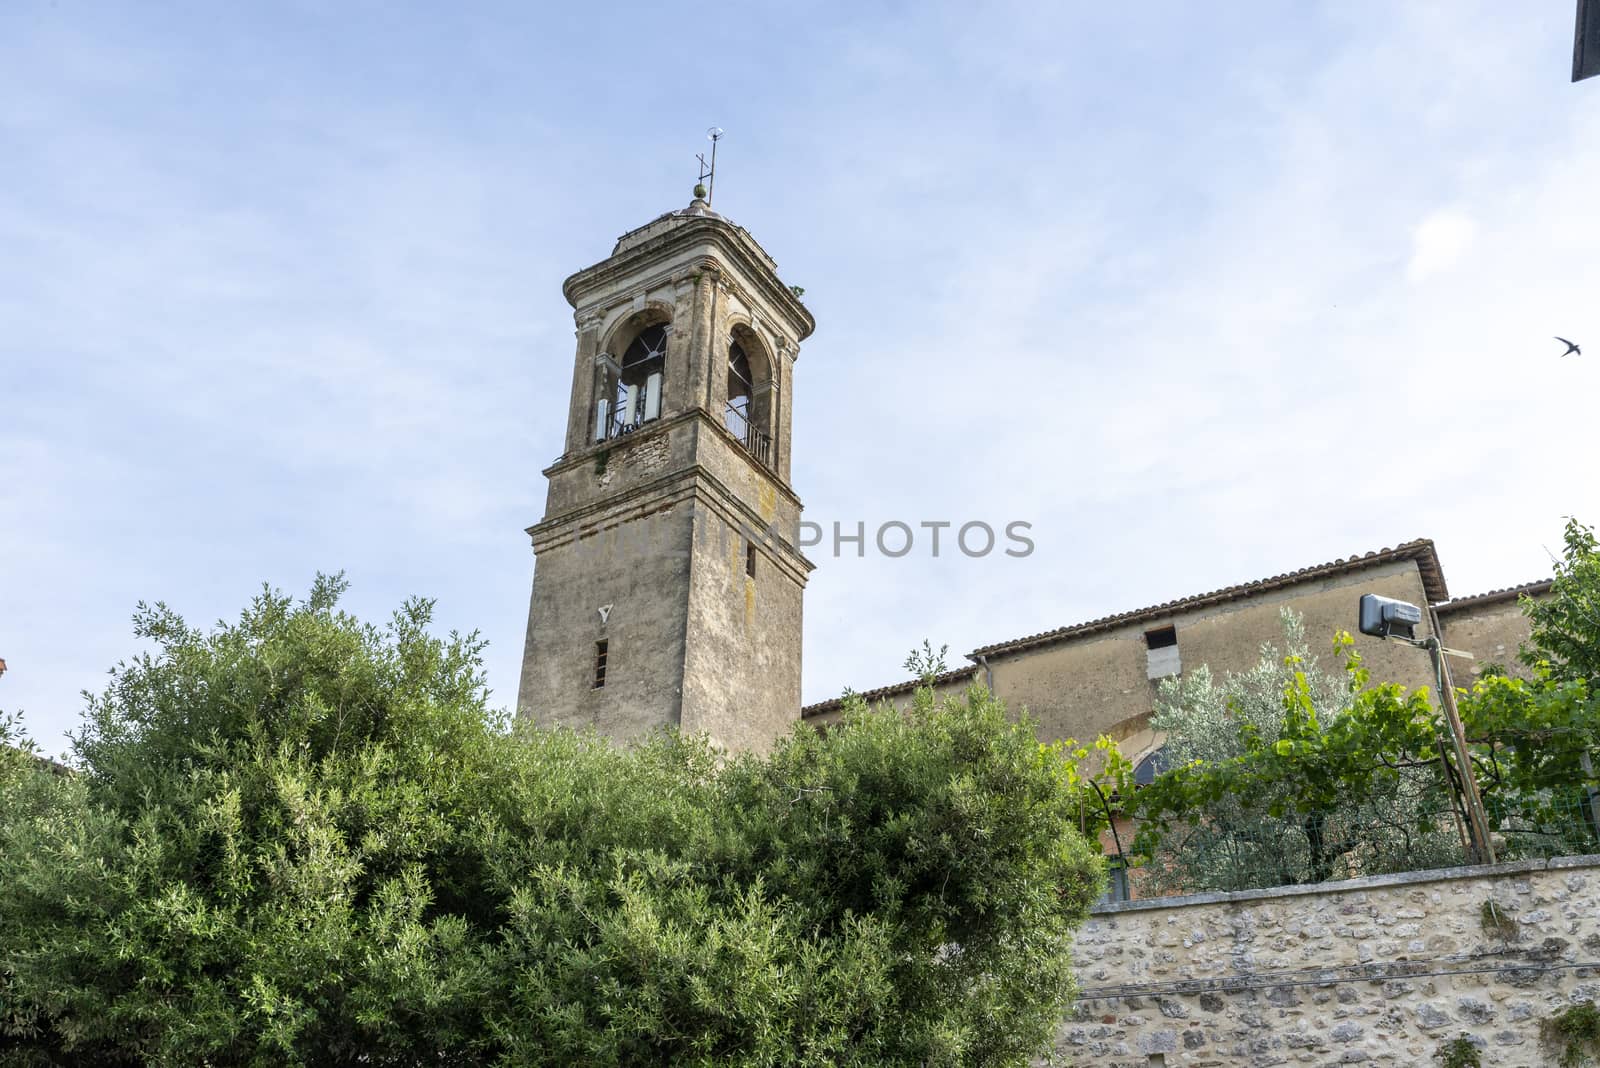 San Gemini, Italy June 13 2020: Bell tower of Santo Gemini in the town of San Gemini medieval age